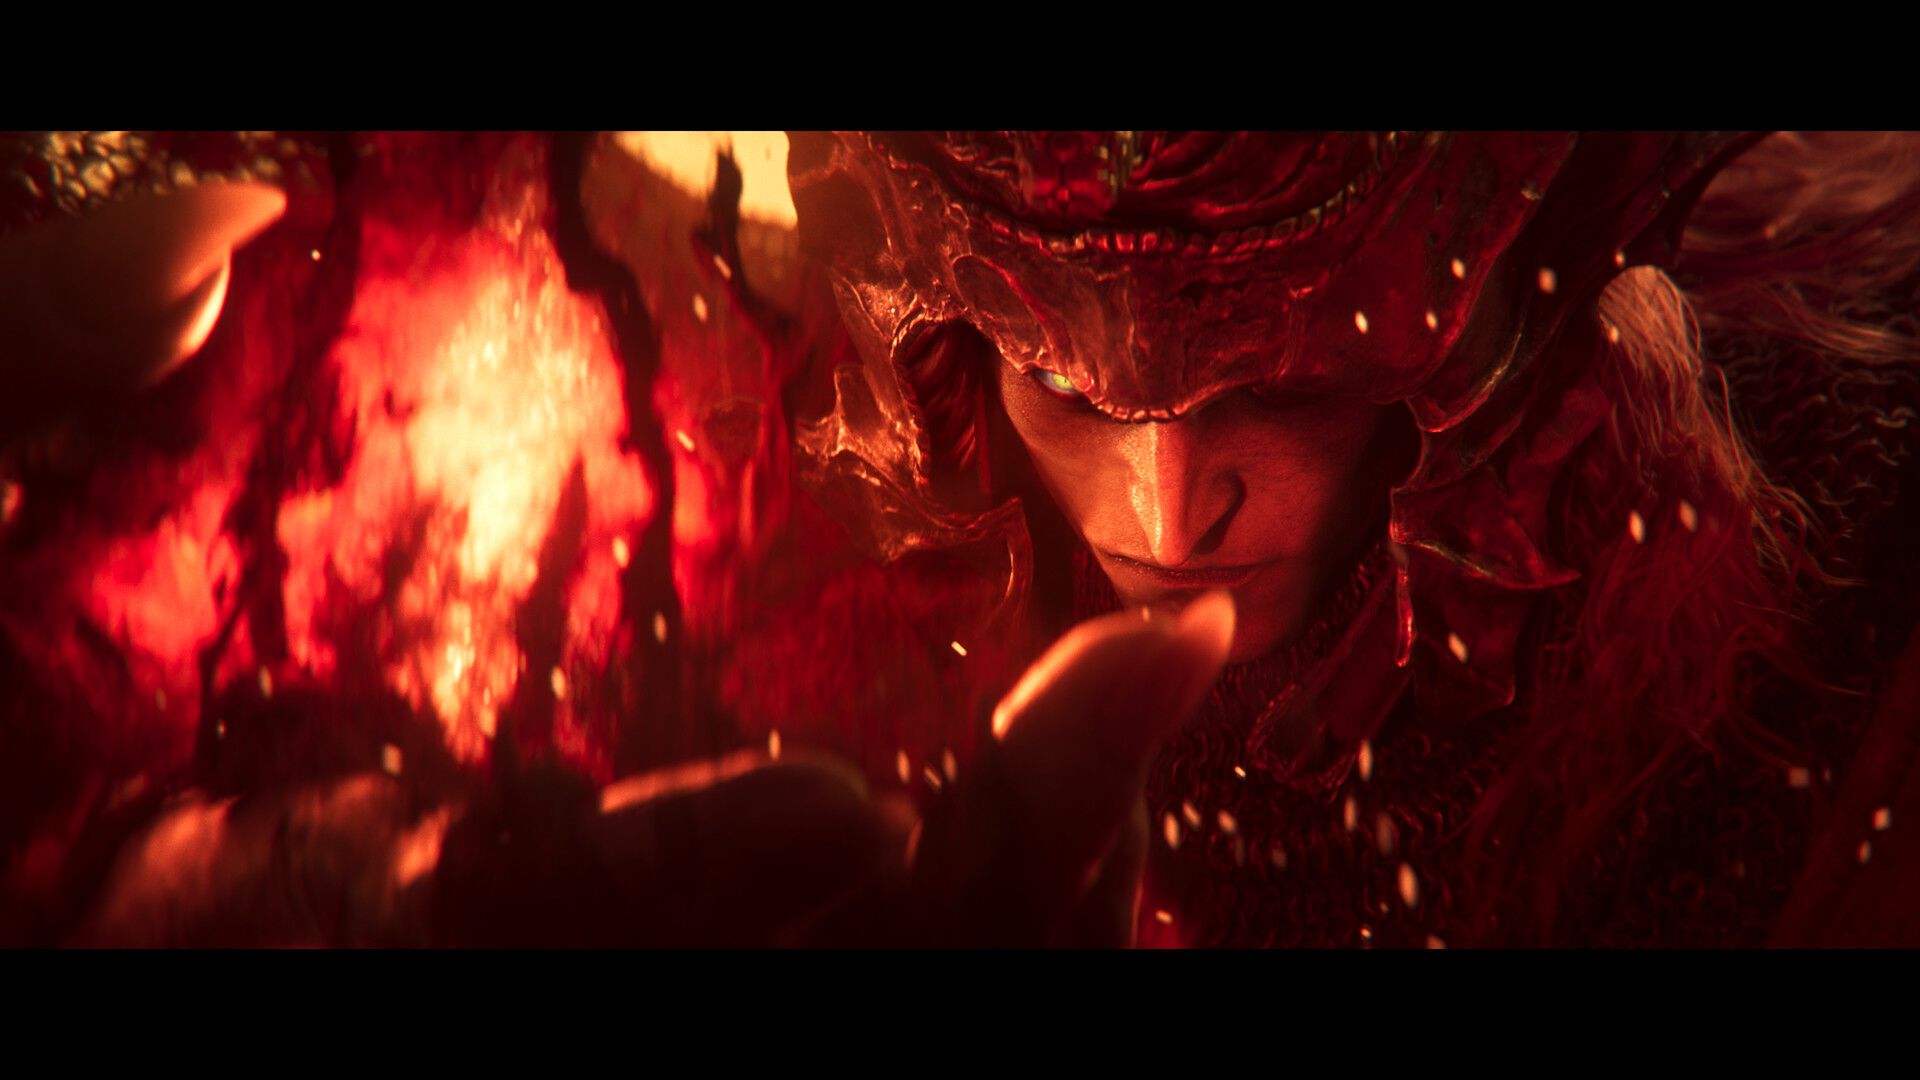 『エルデンリング』DLCの舞台“影の地”を描いた新トレーラー公開。メスメルの火に焼かれた地、謳われぬ戦いの一部を確認できる【ELDEN RING SHADOW OF THE ERDTREE】